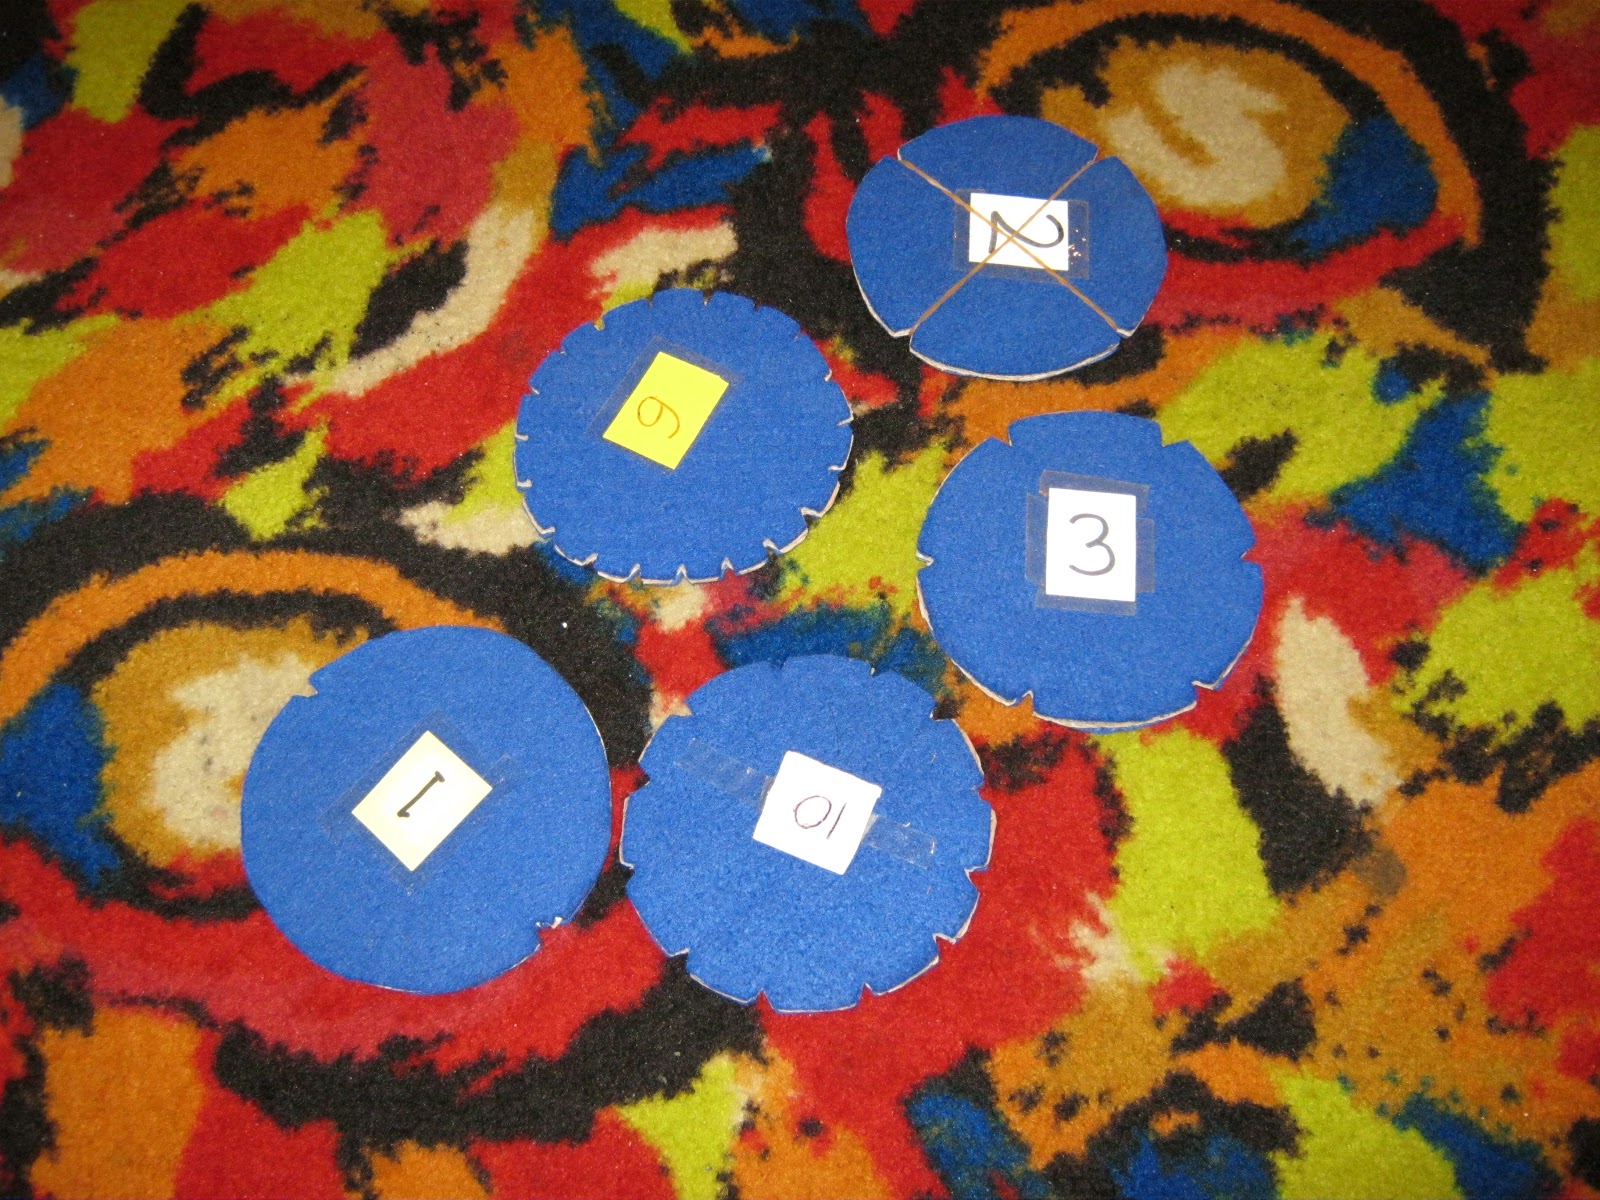 bentuk lingkaran dengan menggunakan stereoform gabus tempelkan angka di bagian tengah gabus dengan lem selotip iris bagian pinggir gabus sesuai angka yang